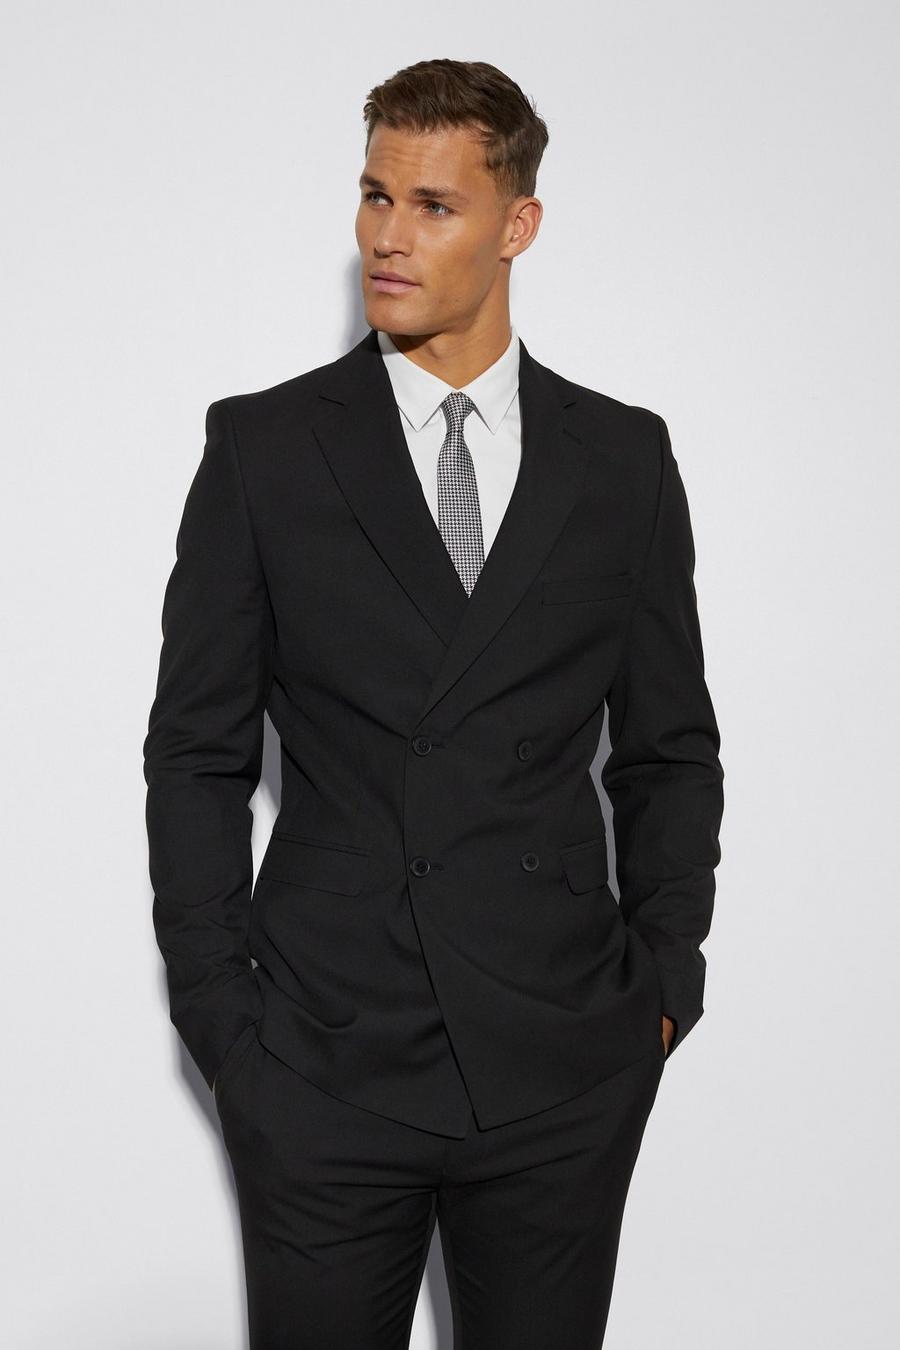 שחור negro ז'קט חליפה סקיני עם דשים כפולים לגברים גבוהים image number 1